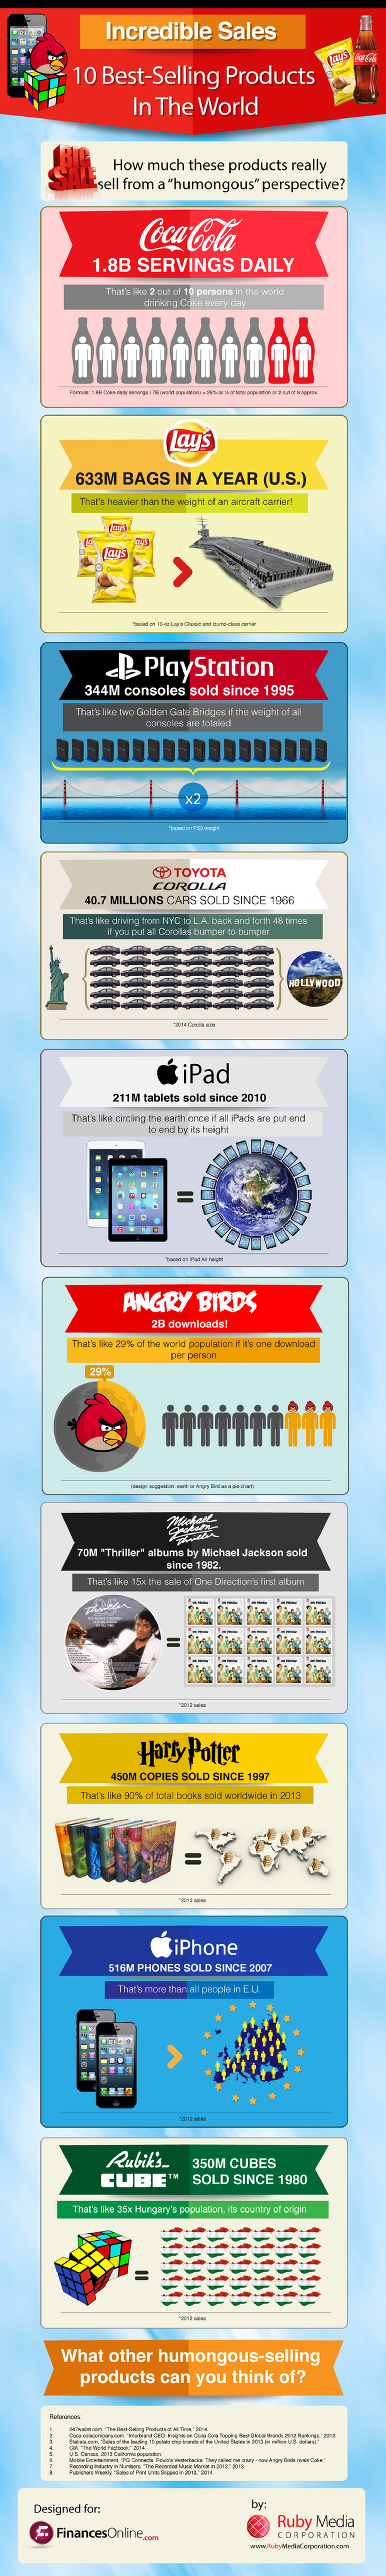 PlayStation, iPhone y Angry Birds entre los 10 productos más vendidos de la historia